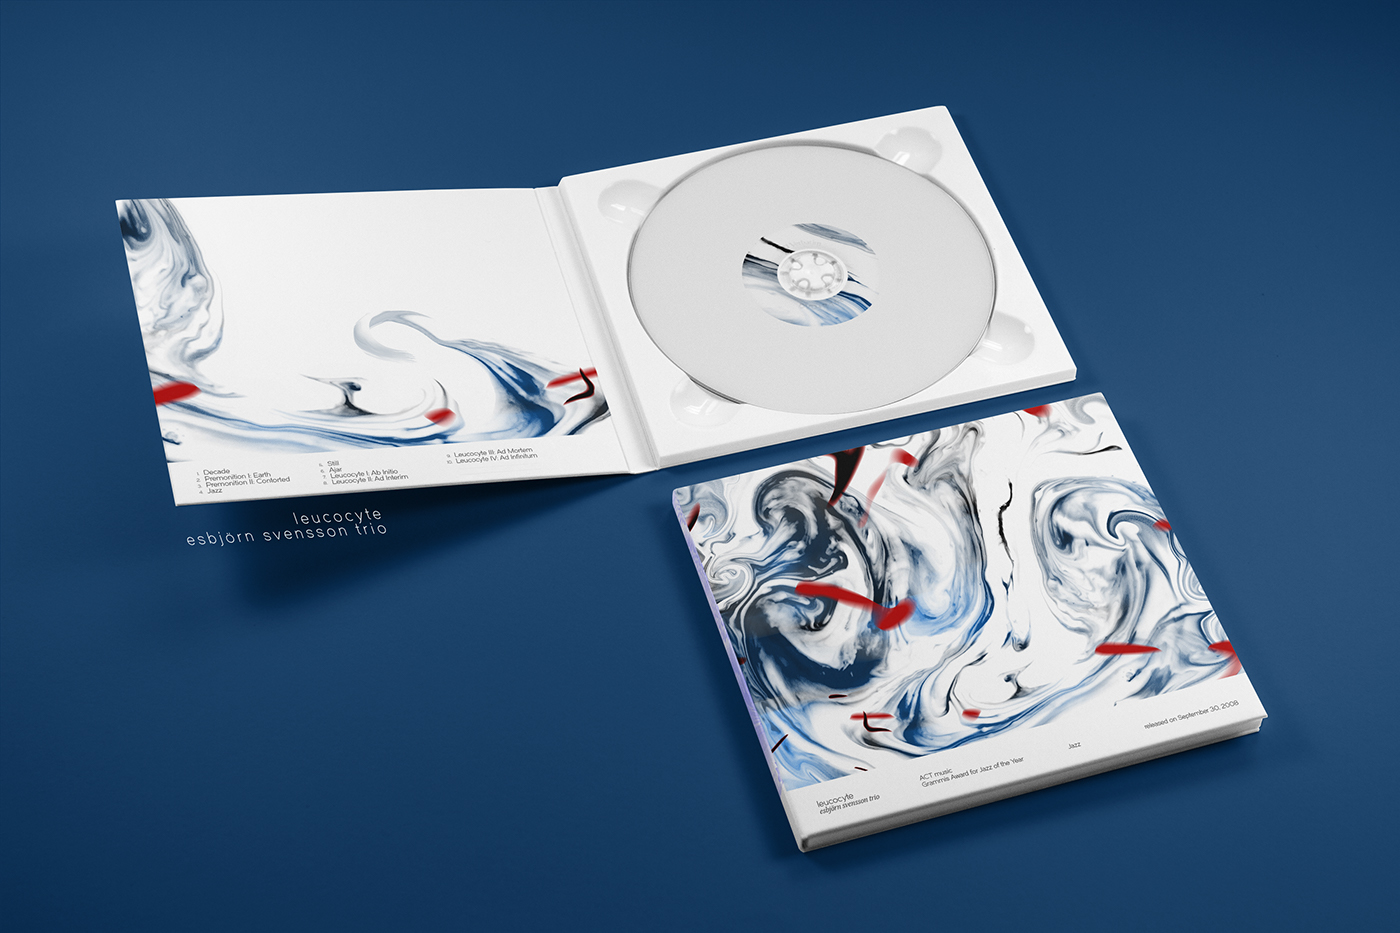 album cd cover CD cover digipak vinyl music album Daniel Martin nguyễn thế bảo animation  ILLUSTRATION 